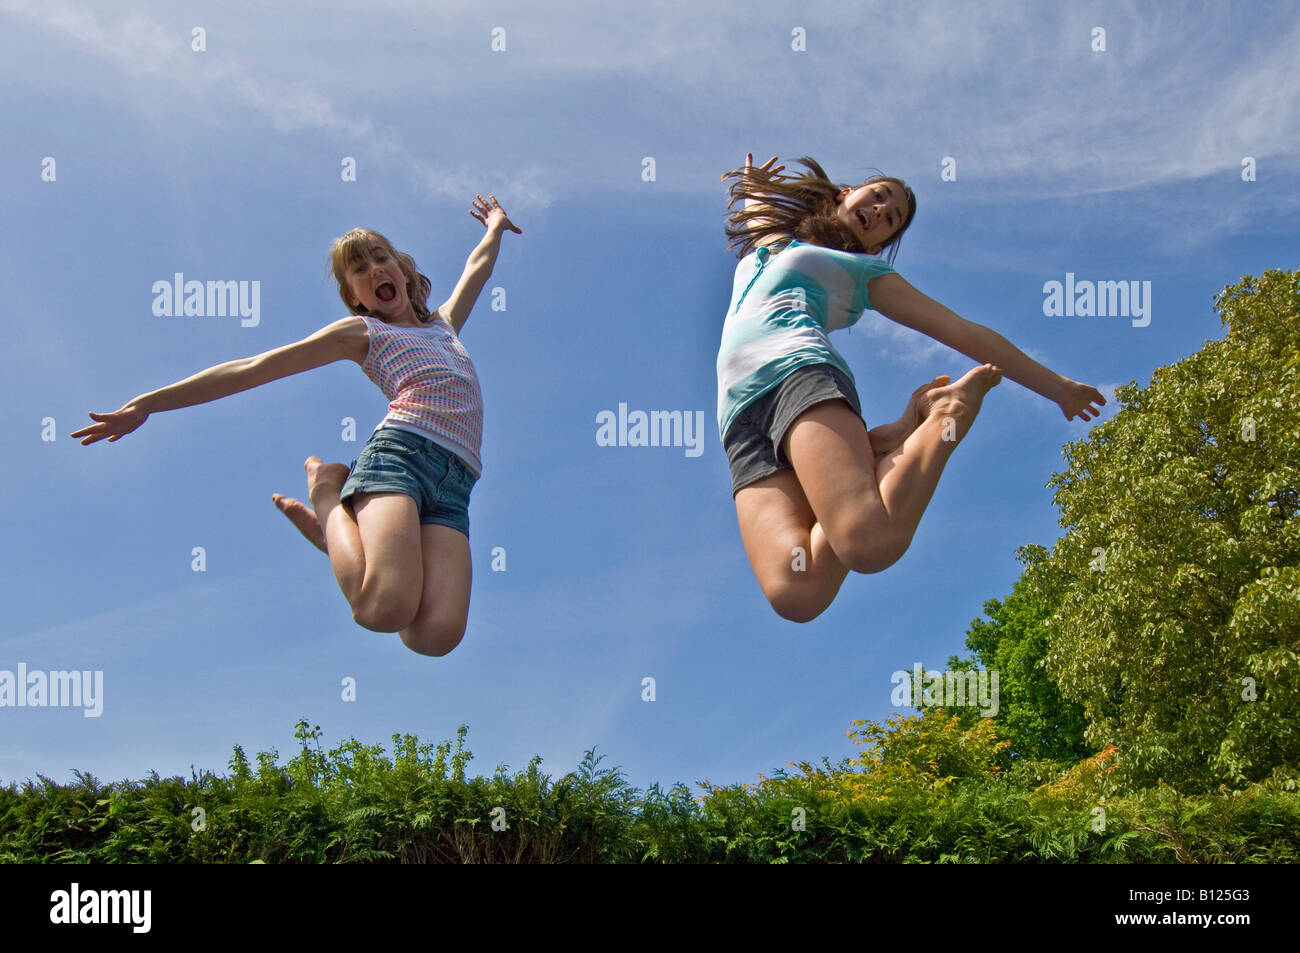 Zwei junge Mädchen (10 und 13 Jahre) springen von einem Trampolin in der Luft an einem sonnigen Tag. Stockfoto